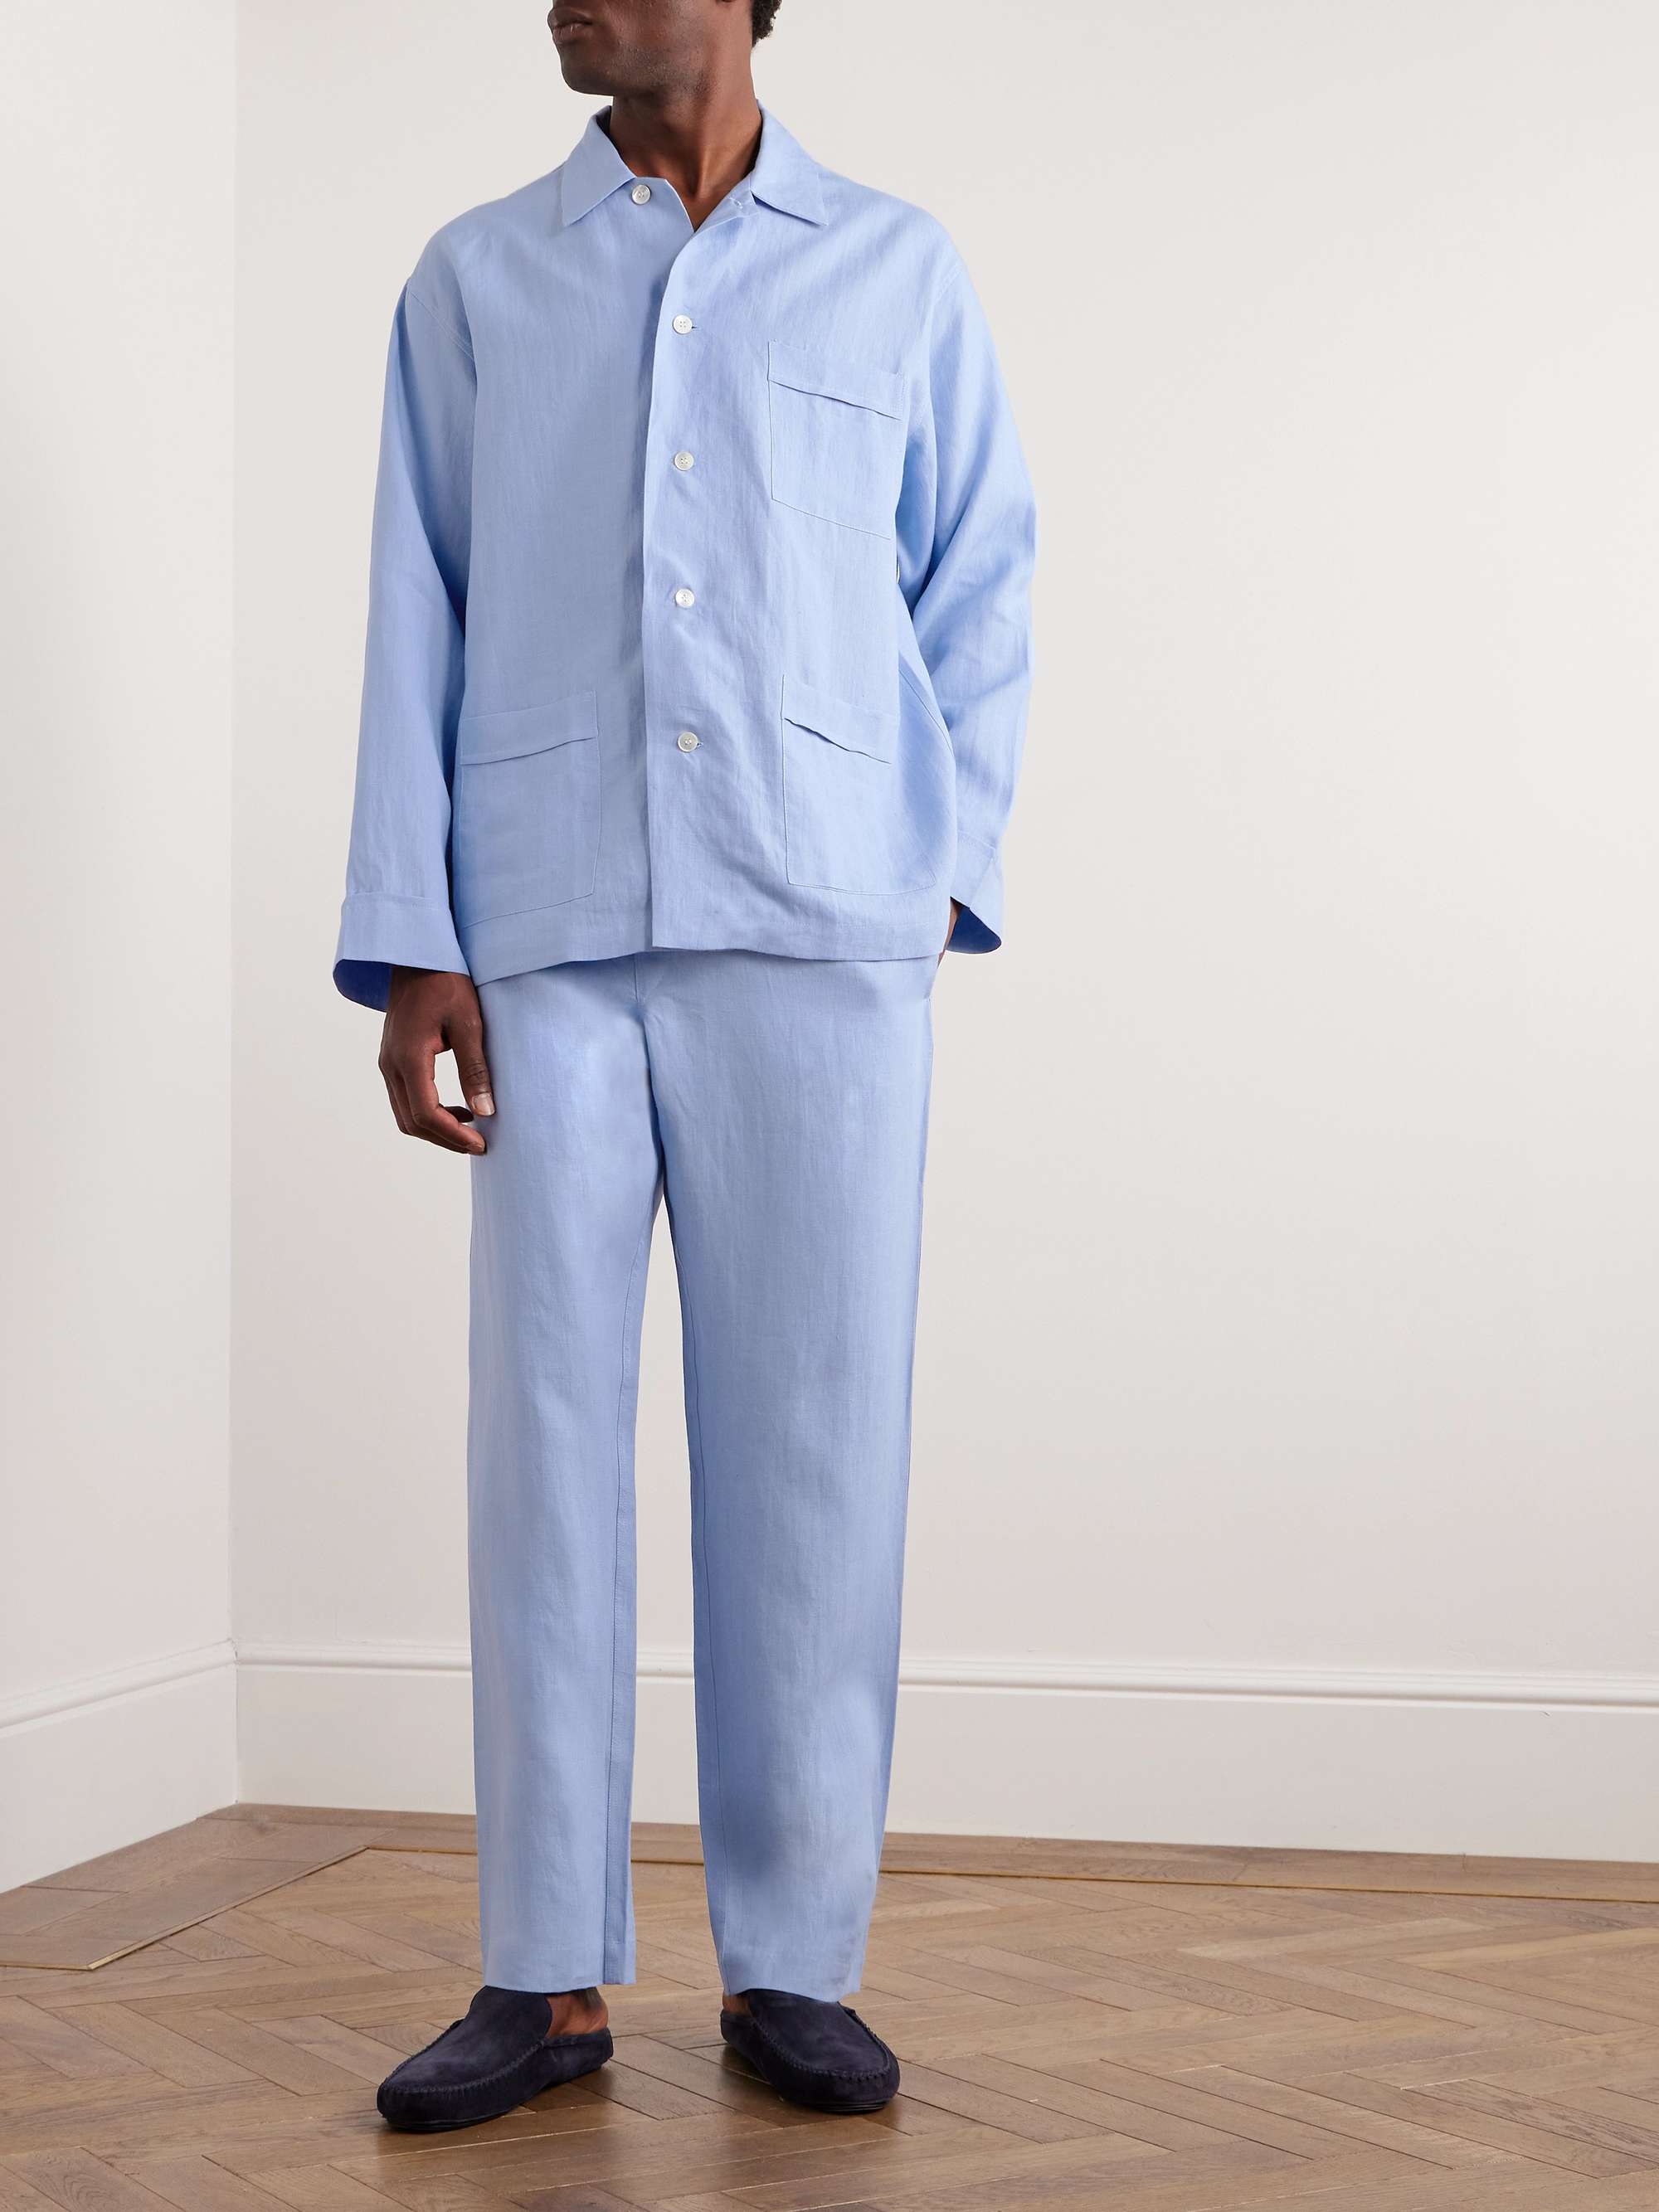 ANDERSON & SHEPPARD Linen Pyjama Set for Men | MR PORTER